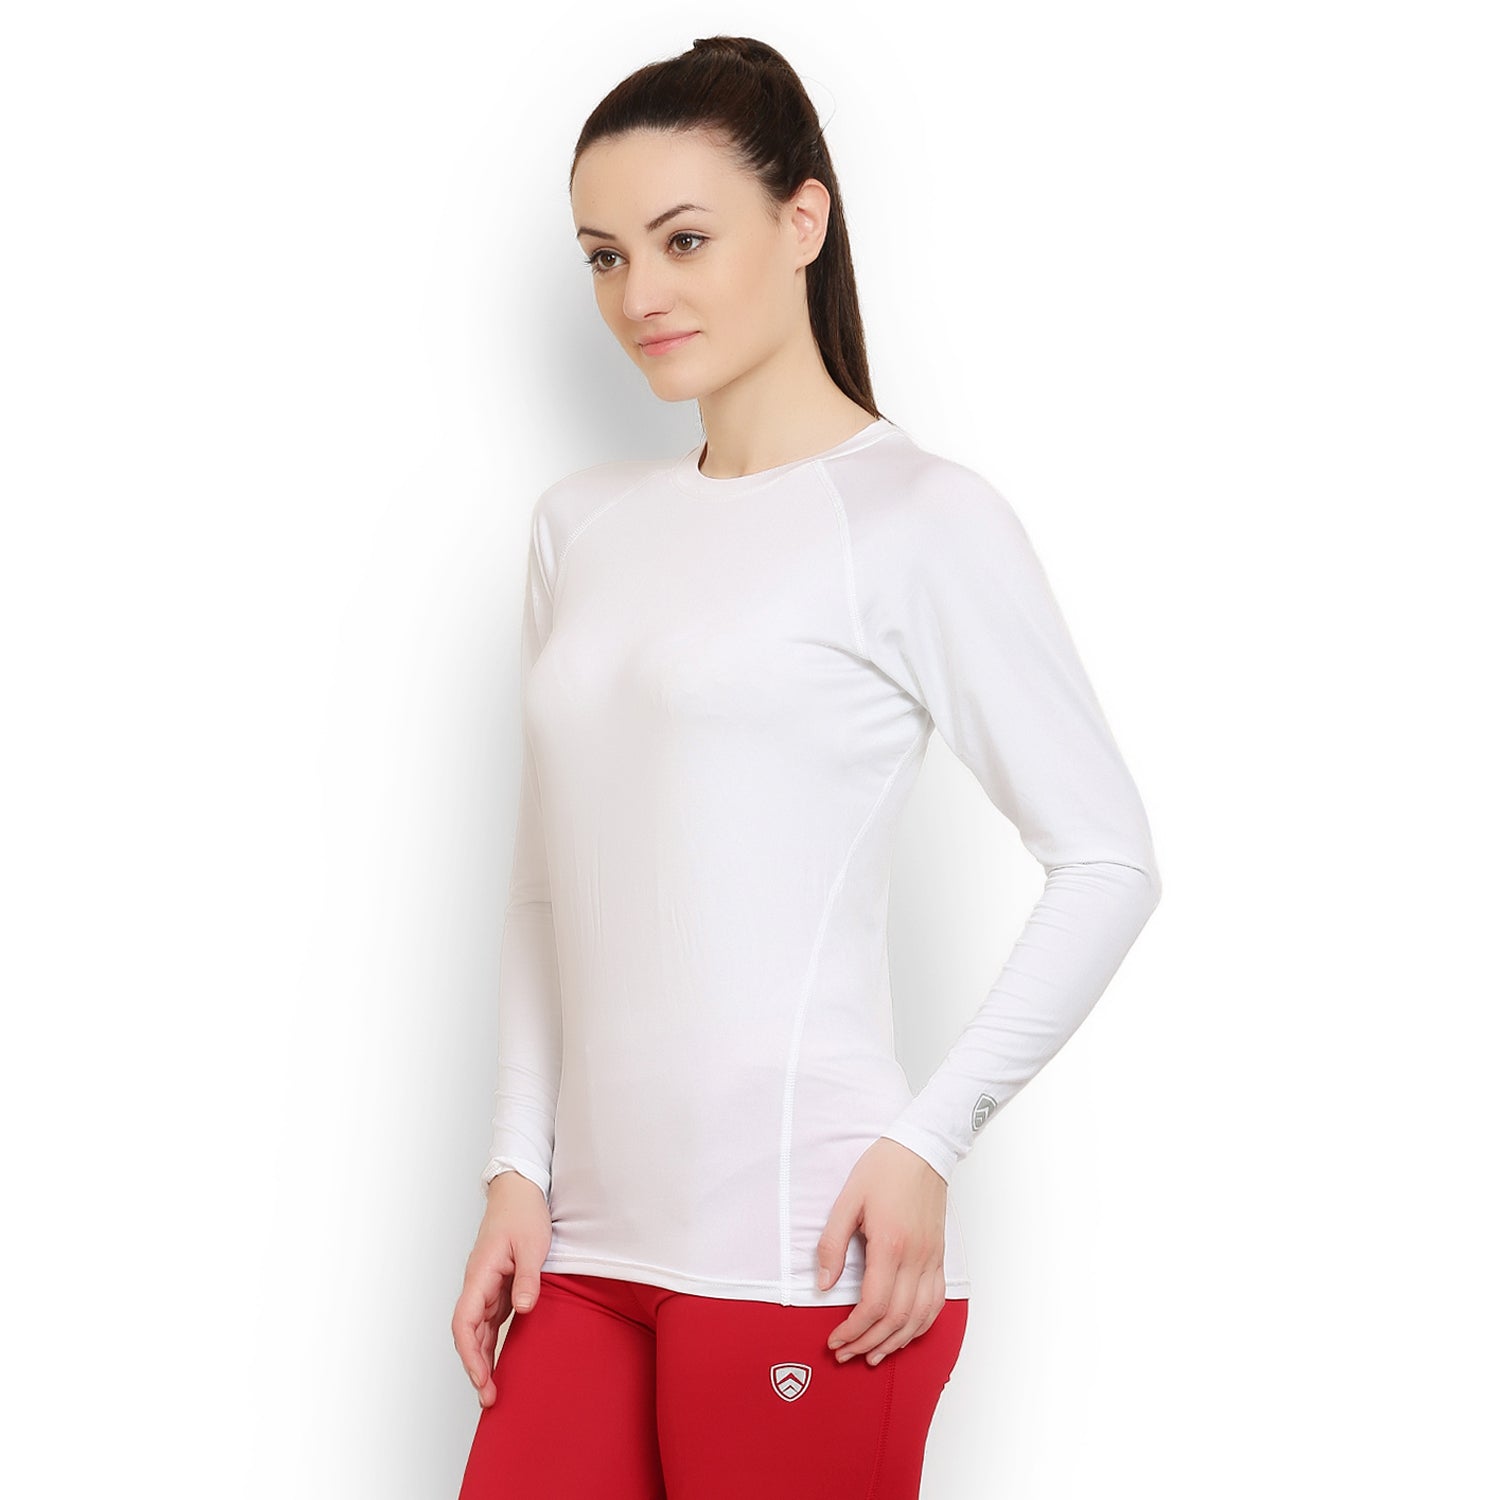 ARMR Unisex WHITE SKYN Full-Sleeve T-shirt